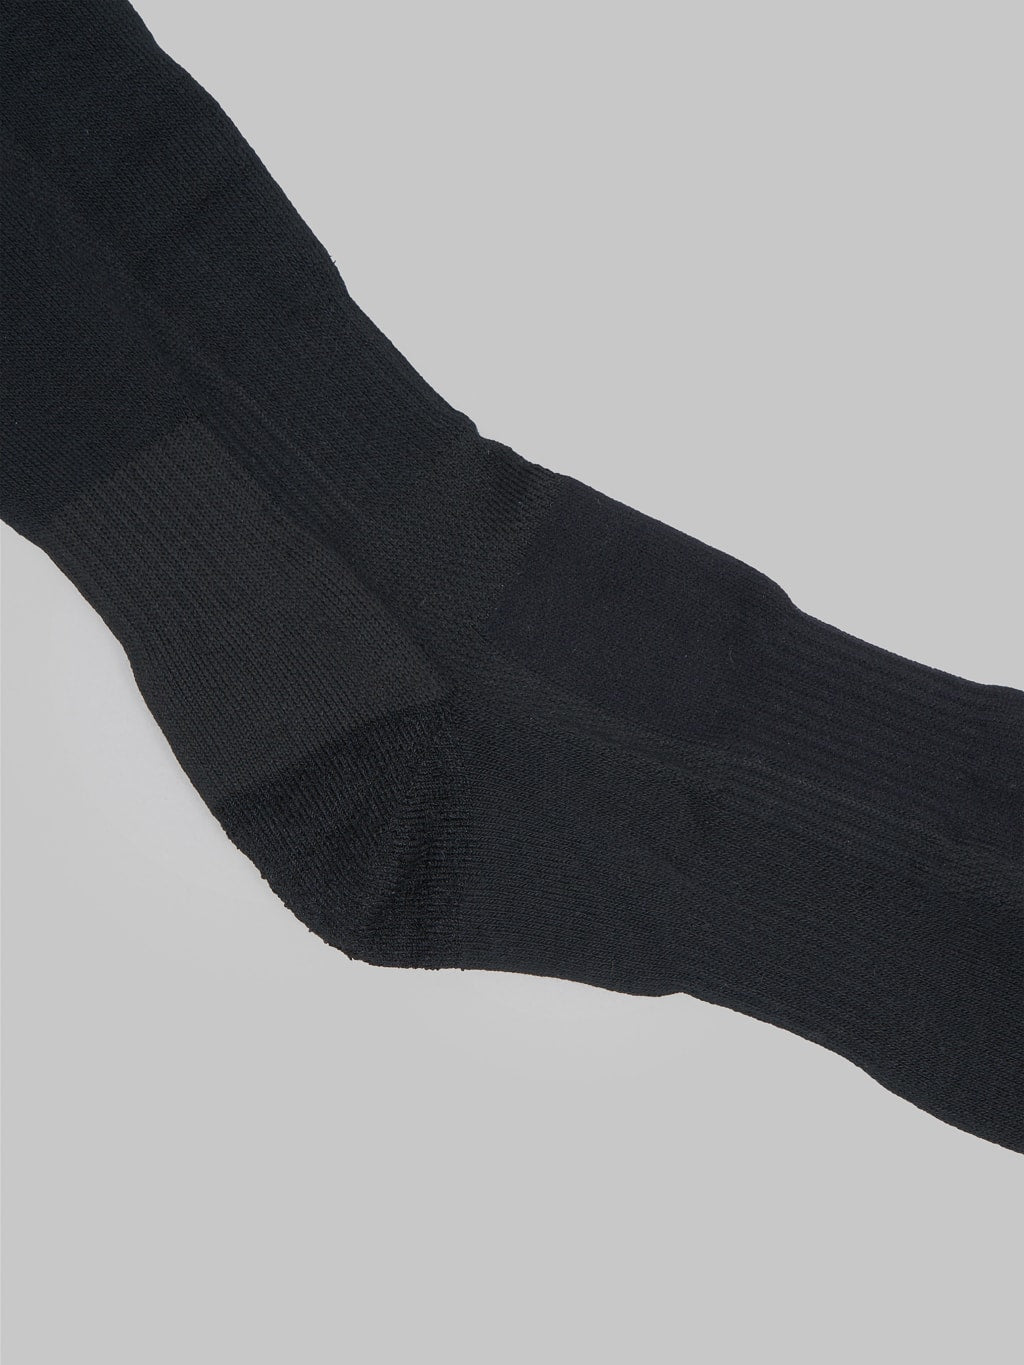 UES boot socks black reinforced heel